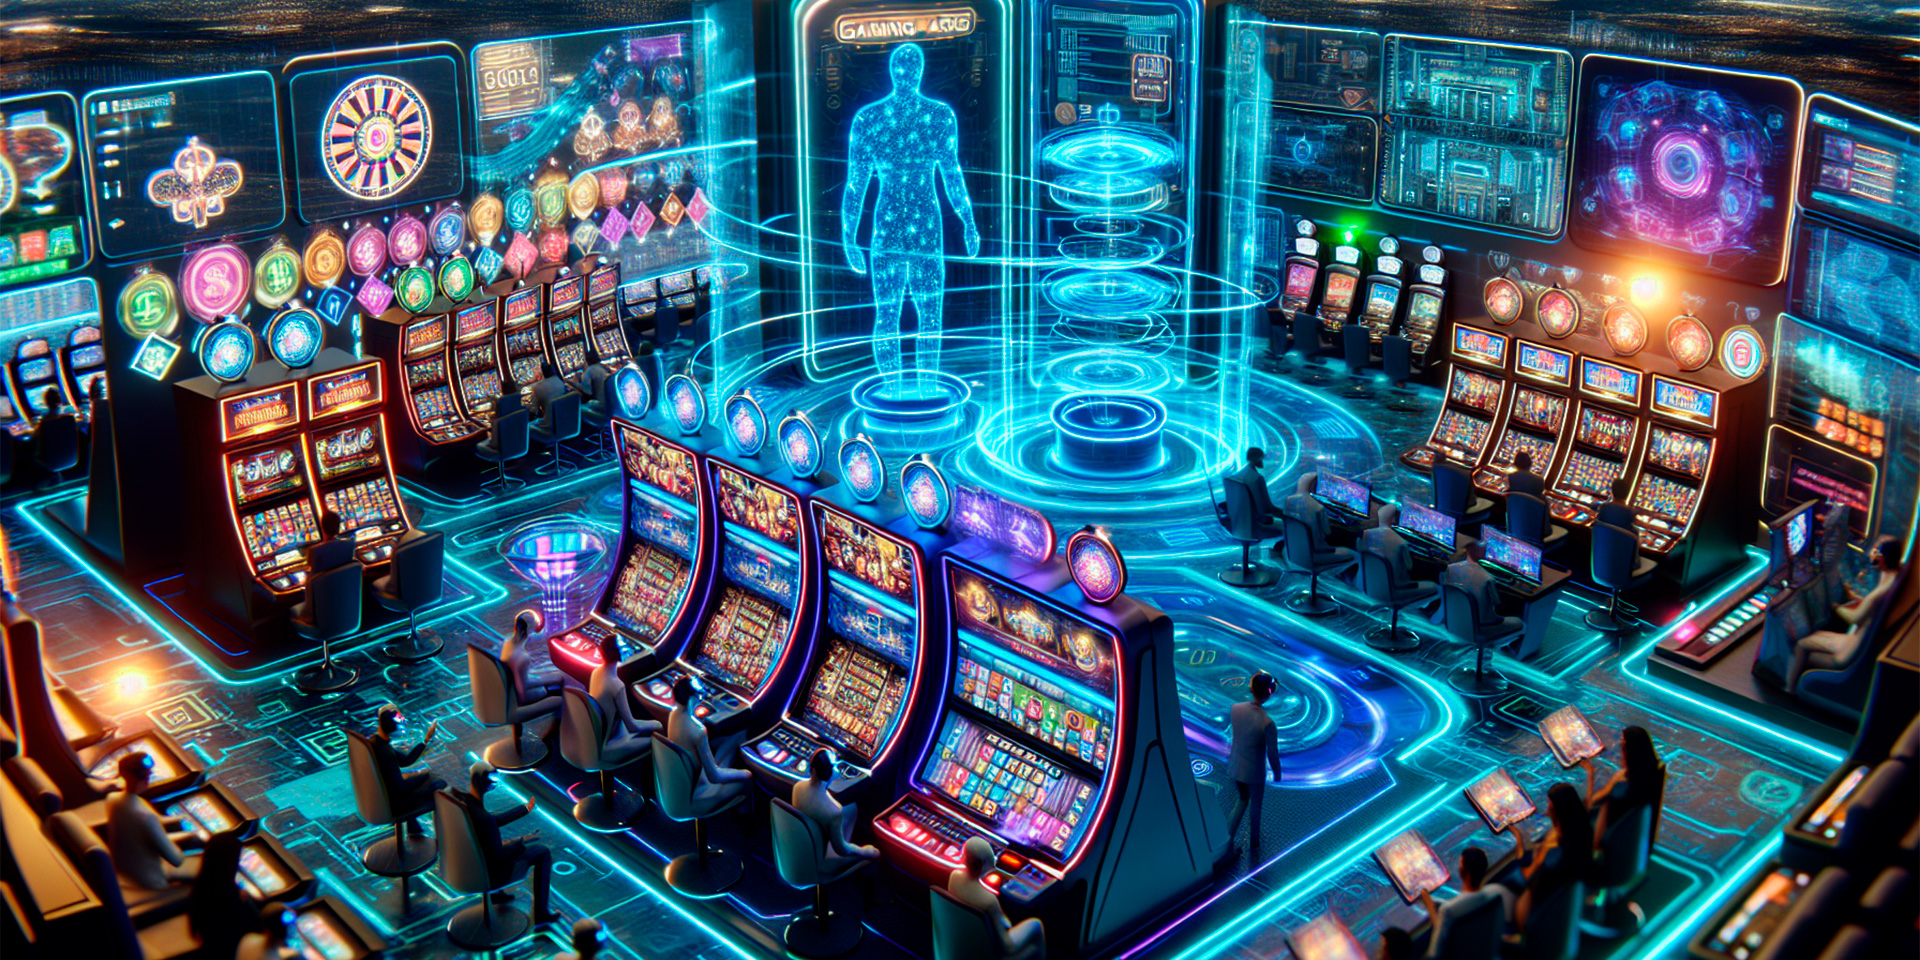 Role of AI in casino